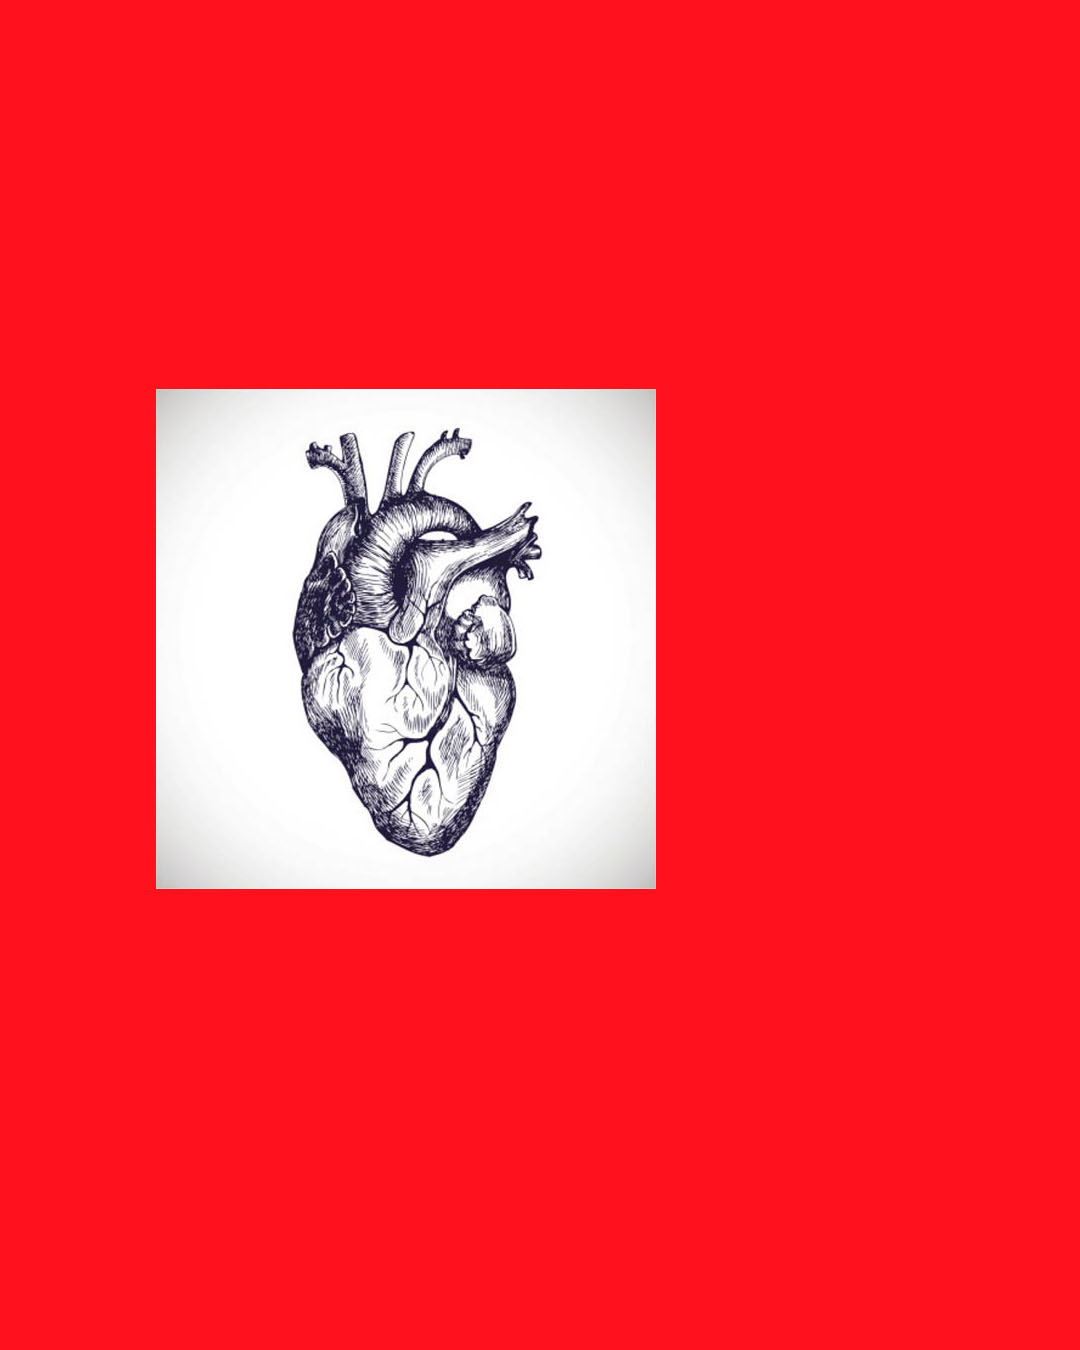 Gravura de um coração humano, ponto de partida para os estudos de grafismos que levaram ao desenho da logo.